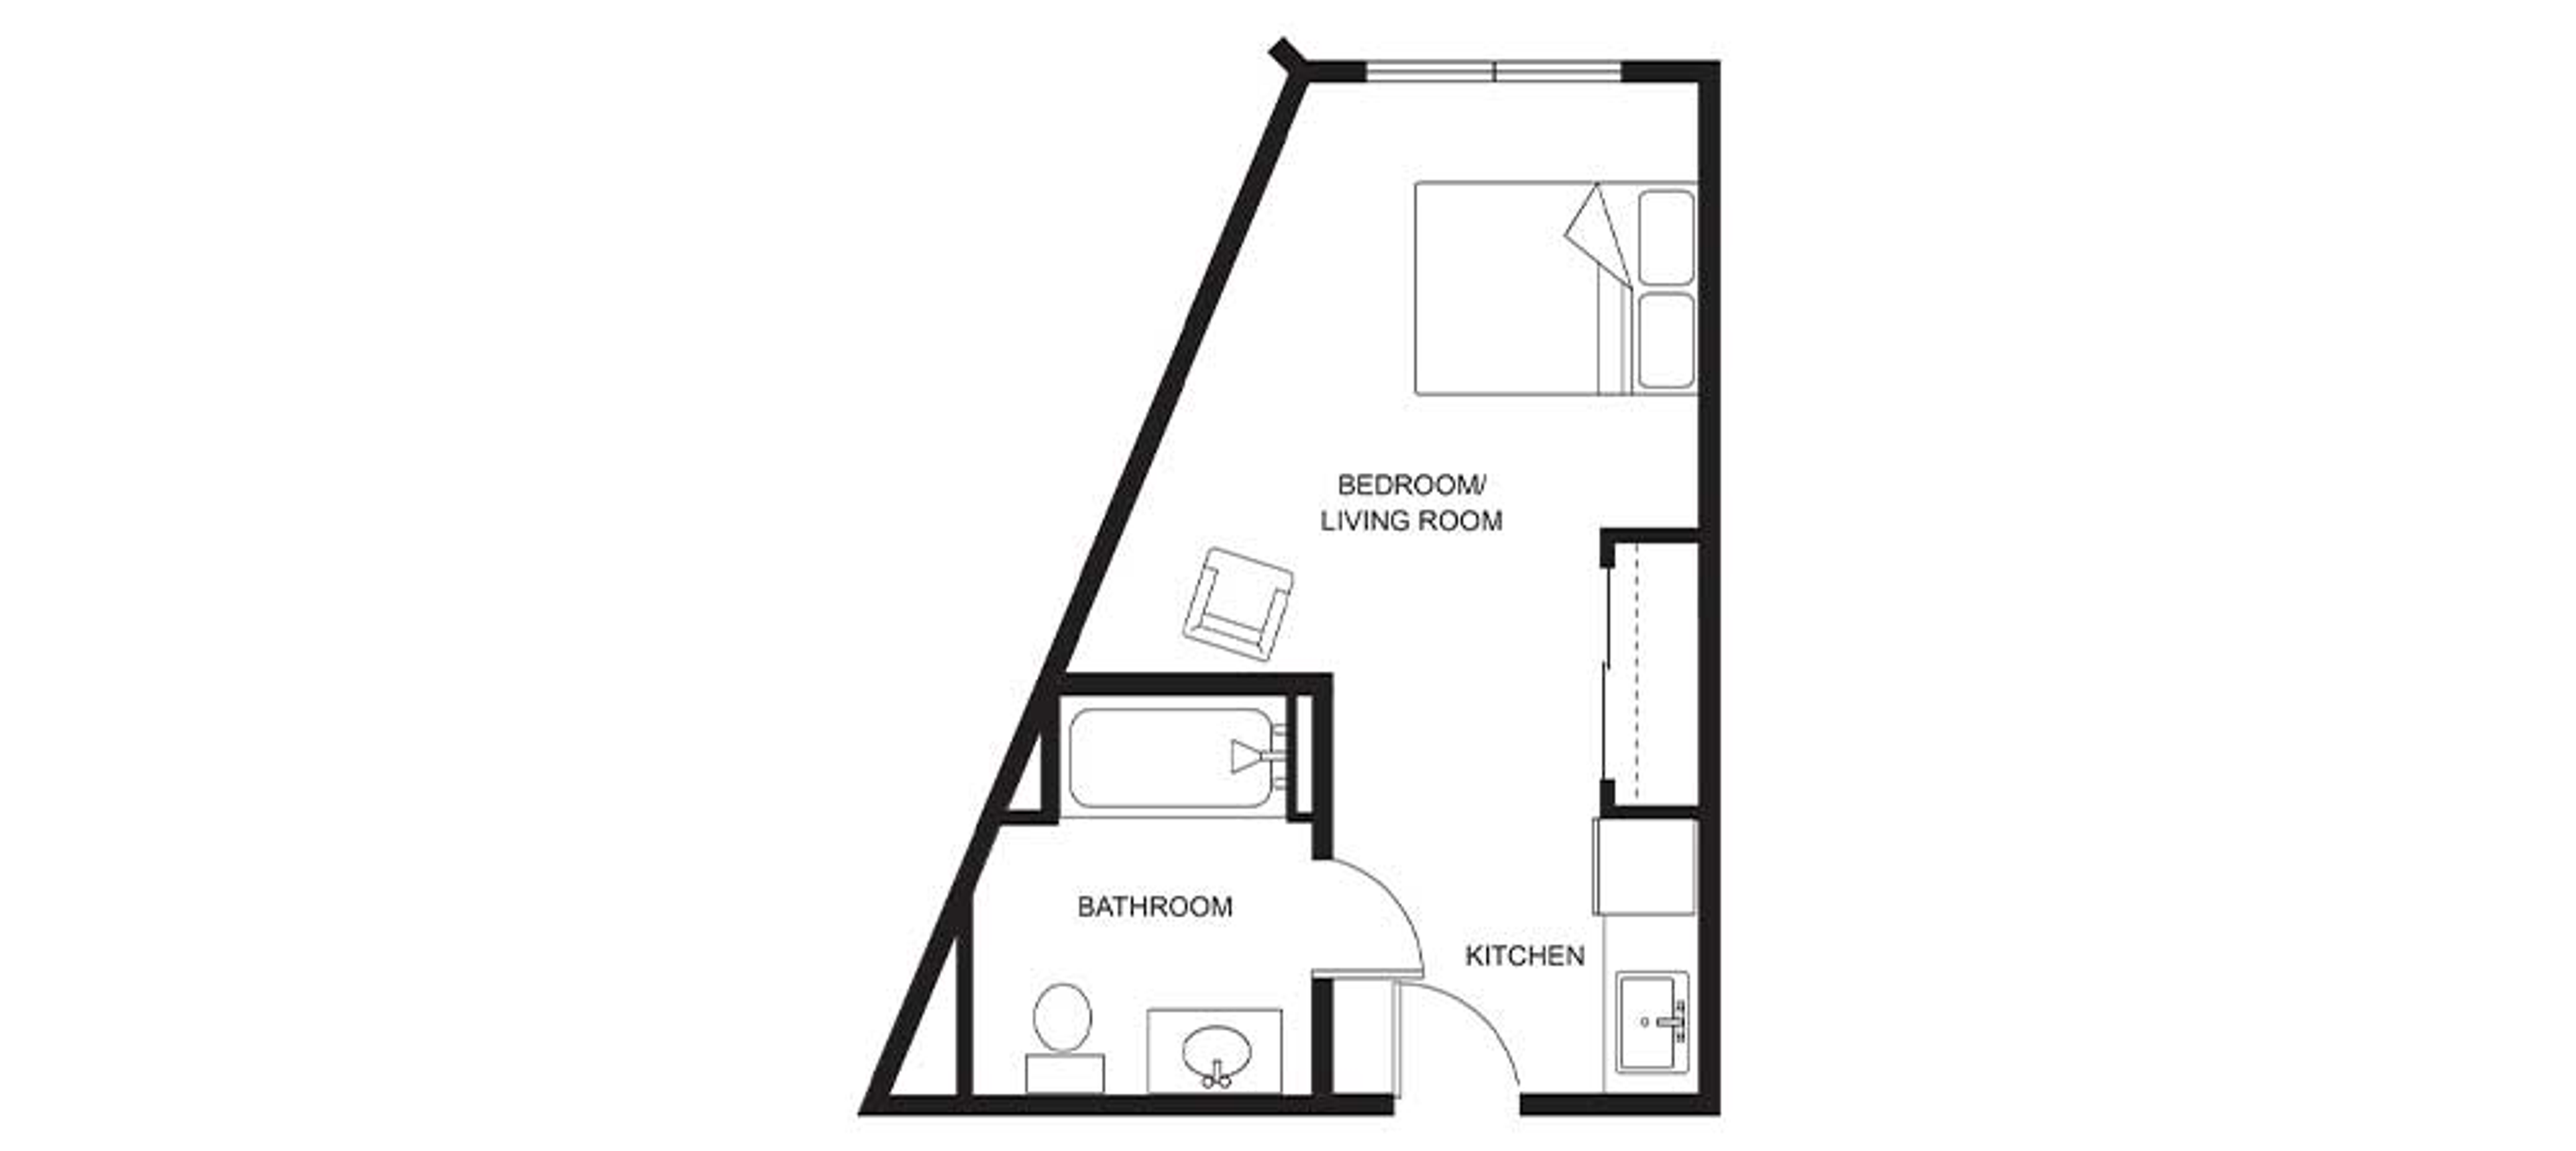 Floorplan - Clearwater Springs - Studio 385 sqft Assisted Living 